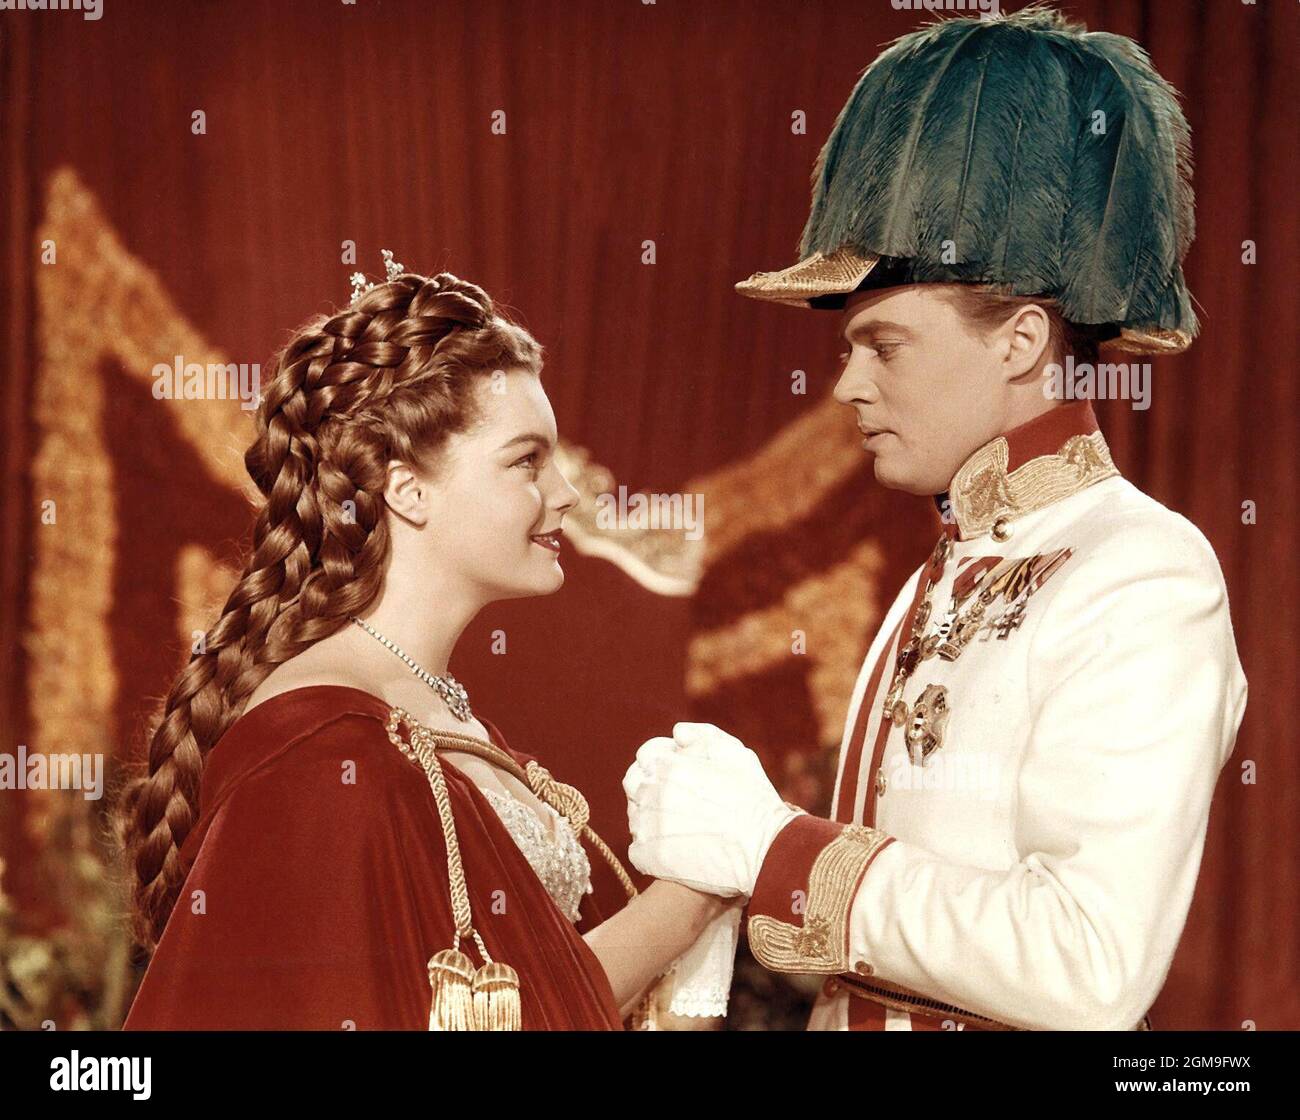 ROMY SCHNEIDER and KARLHEINZ BOHM in SISSI (1955), directed by ERNST MARISCHKA. Credit: ERMA FILM / Album Stock Photo